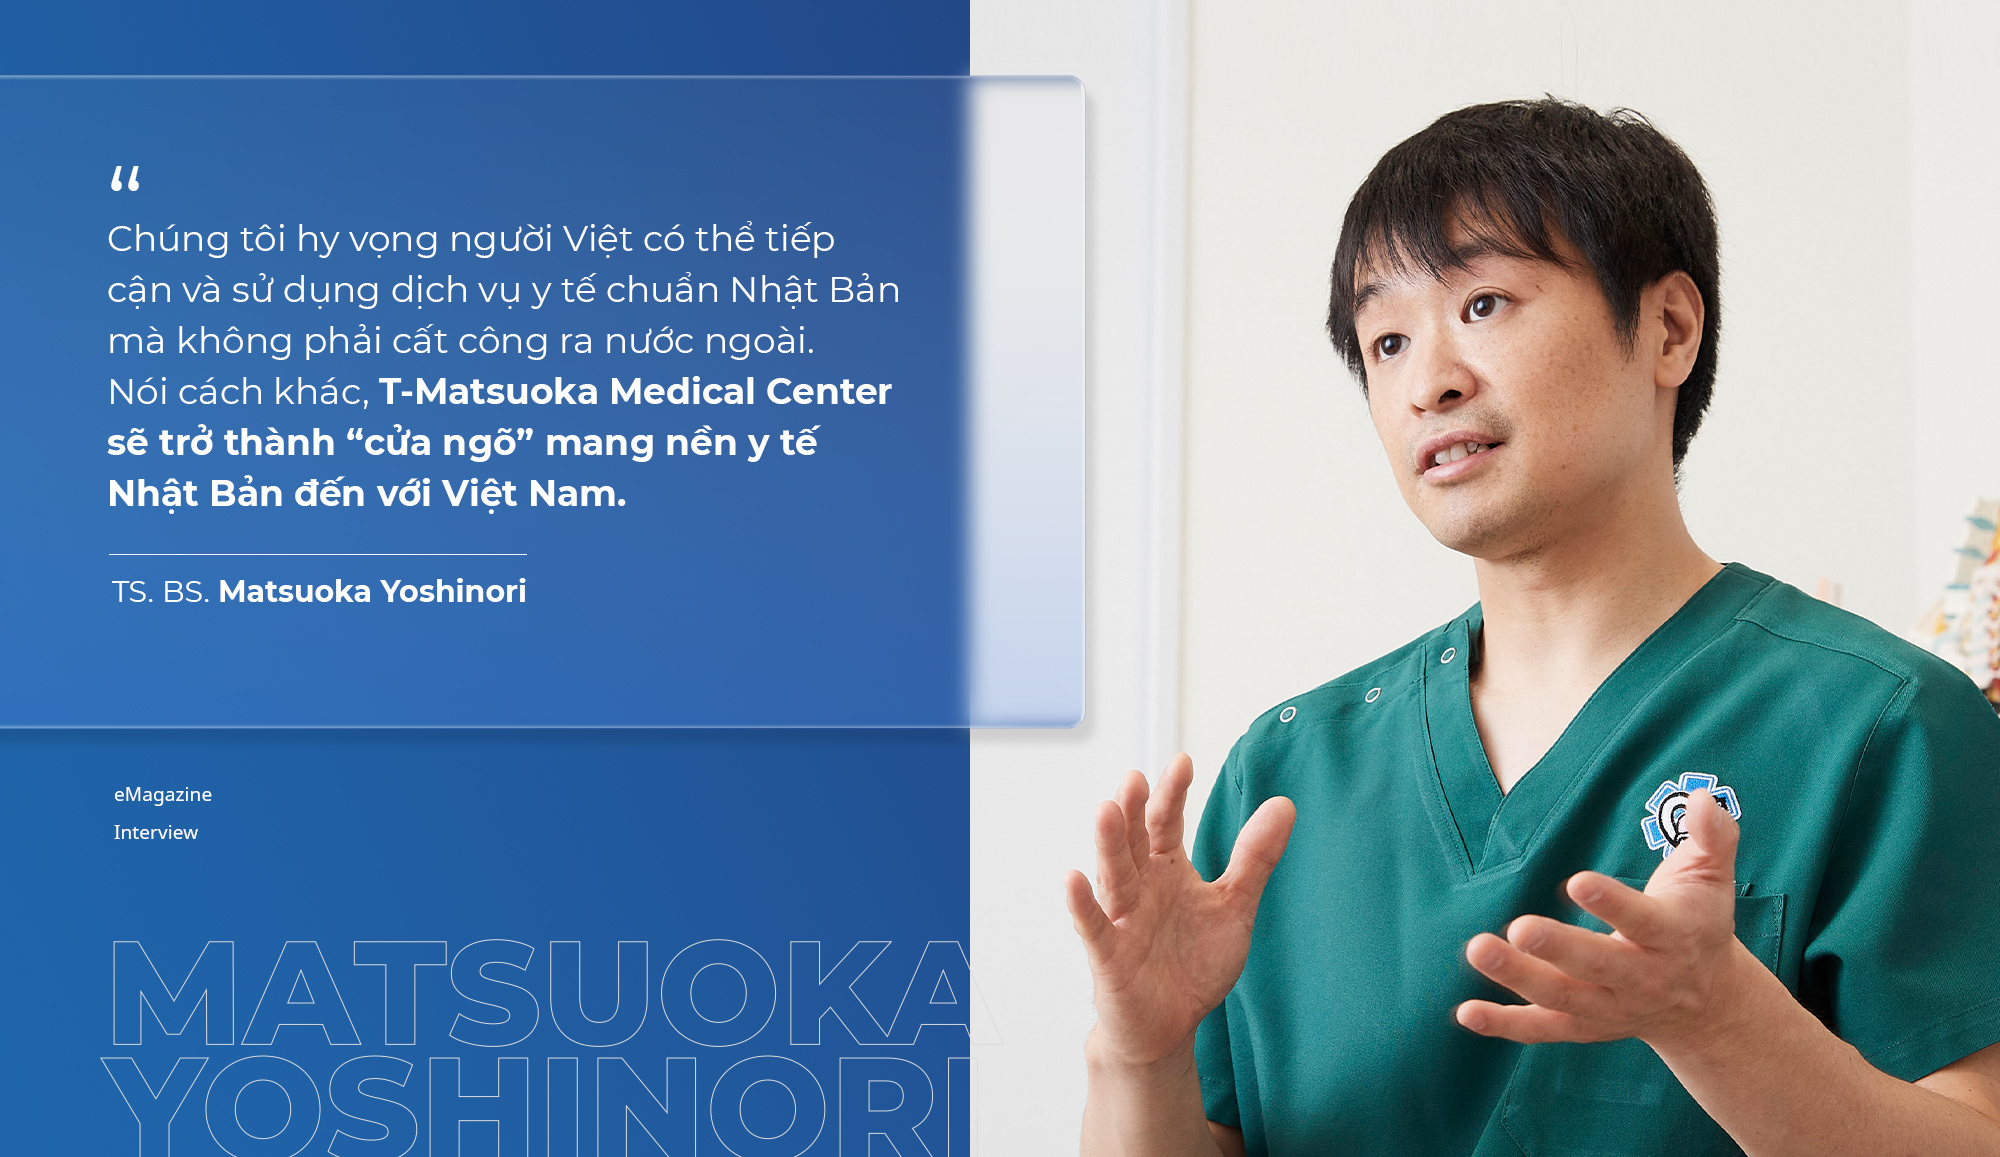 “Siêu bác sĩ” Nhật Bản Matsuoka Yoshinori: Kiểm tra sức khỏe định kỳ - “bí kíp” sống khỏe, sống chất lượng và sống lâu - Ảnh 2.